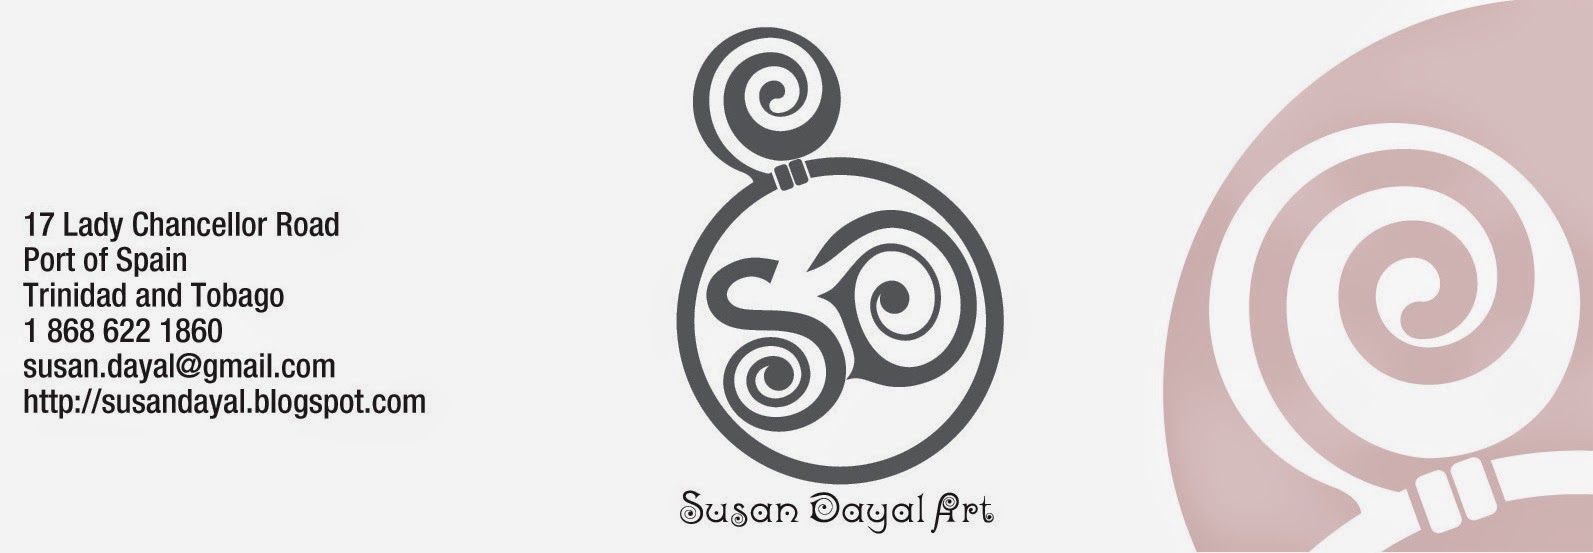 SUSAN DAYAL ART